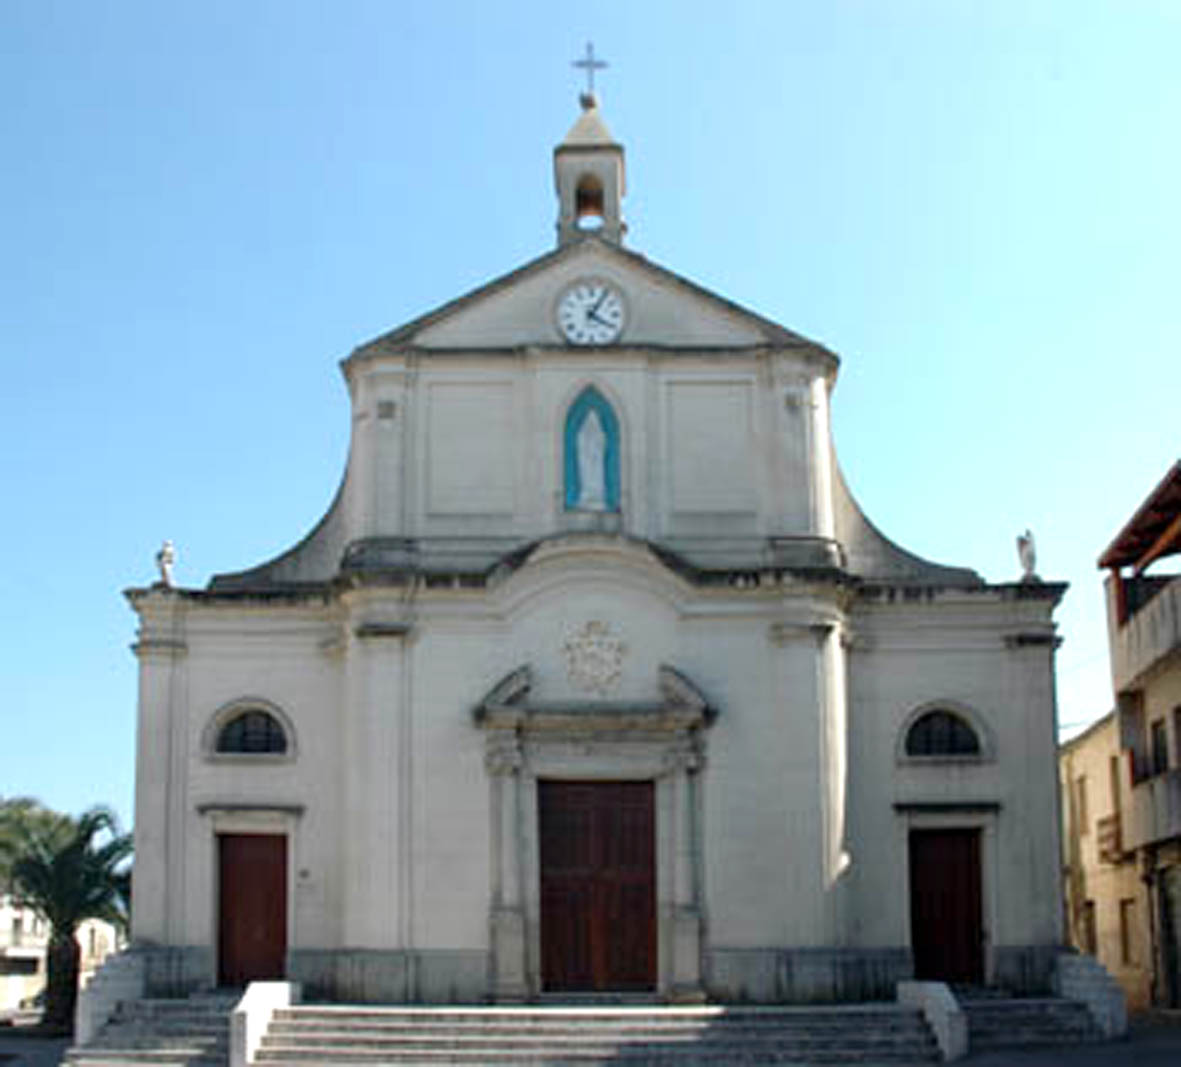 La Chiesa di San Teodoro Martire